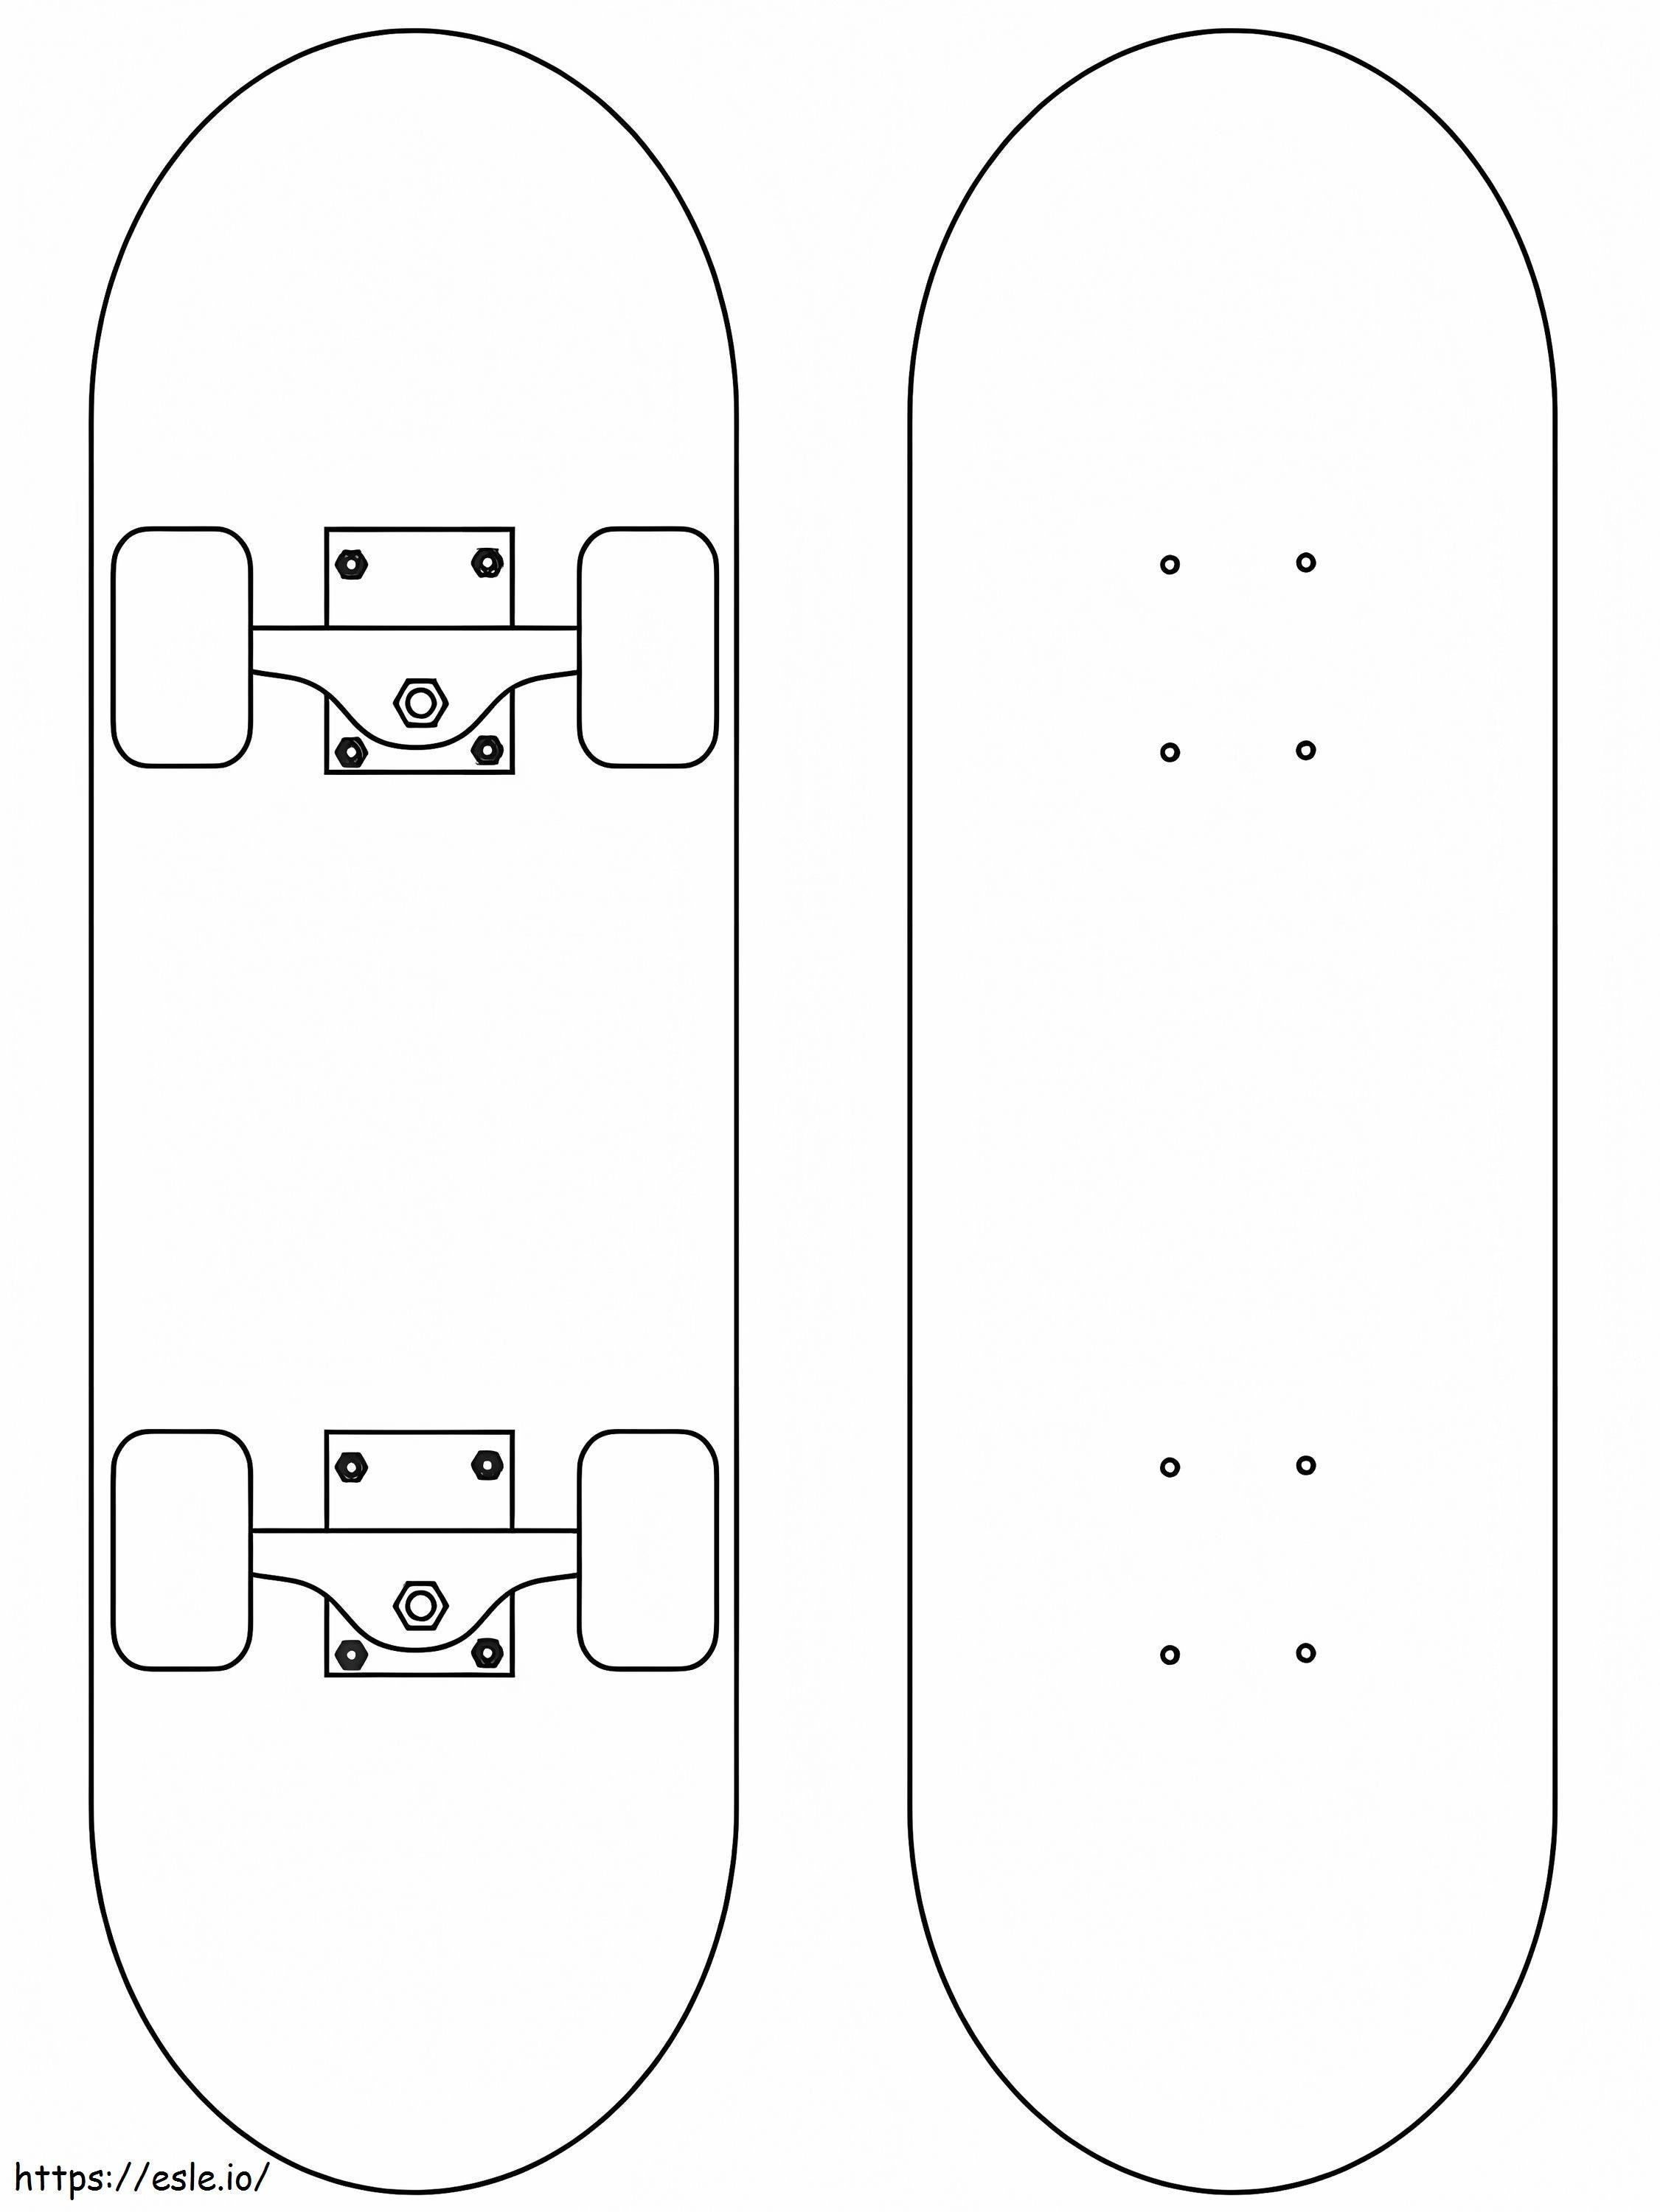 Skateboard superiore e inferiore da colorare